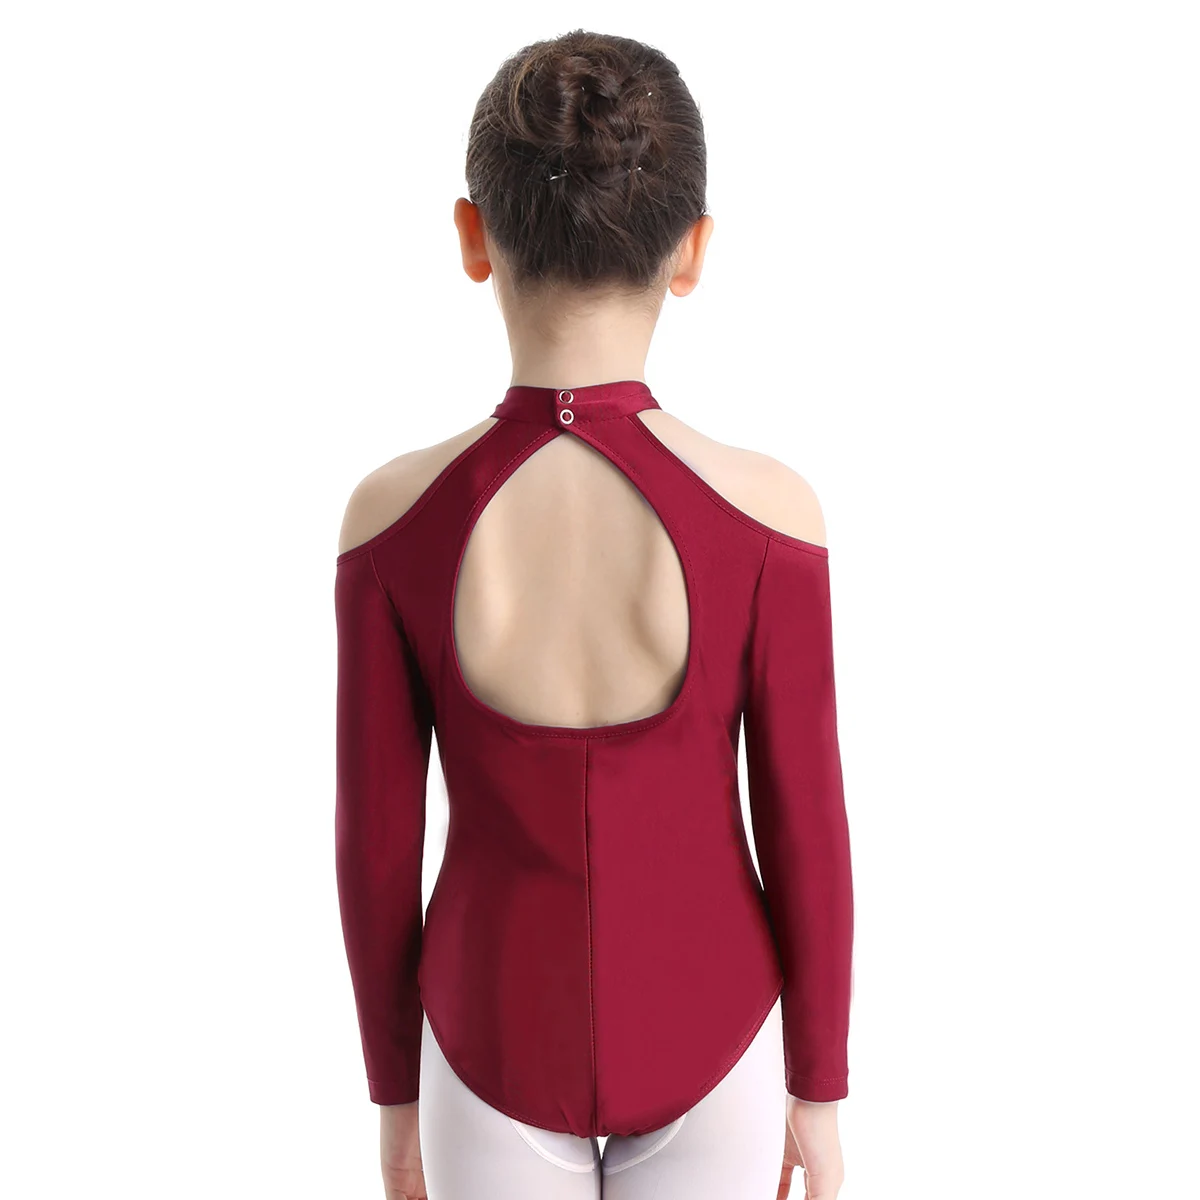 Iiniim/комбинезон для девочек с открытыми плечами, длинными рукавами и вырезом на спине, балетный танцевальный гимнастический купальник, детский комбинезон, боди